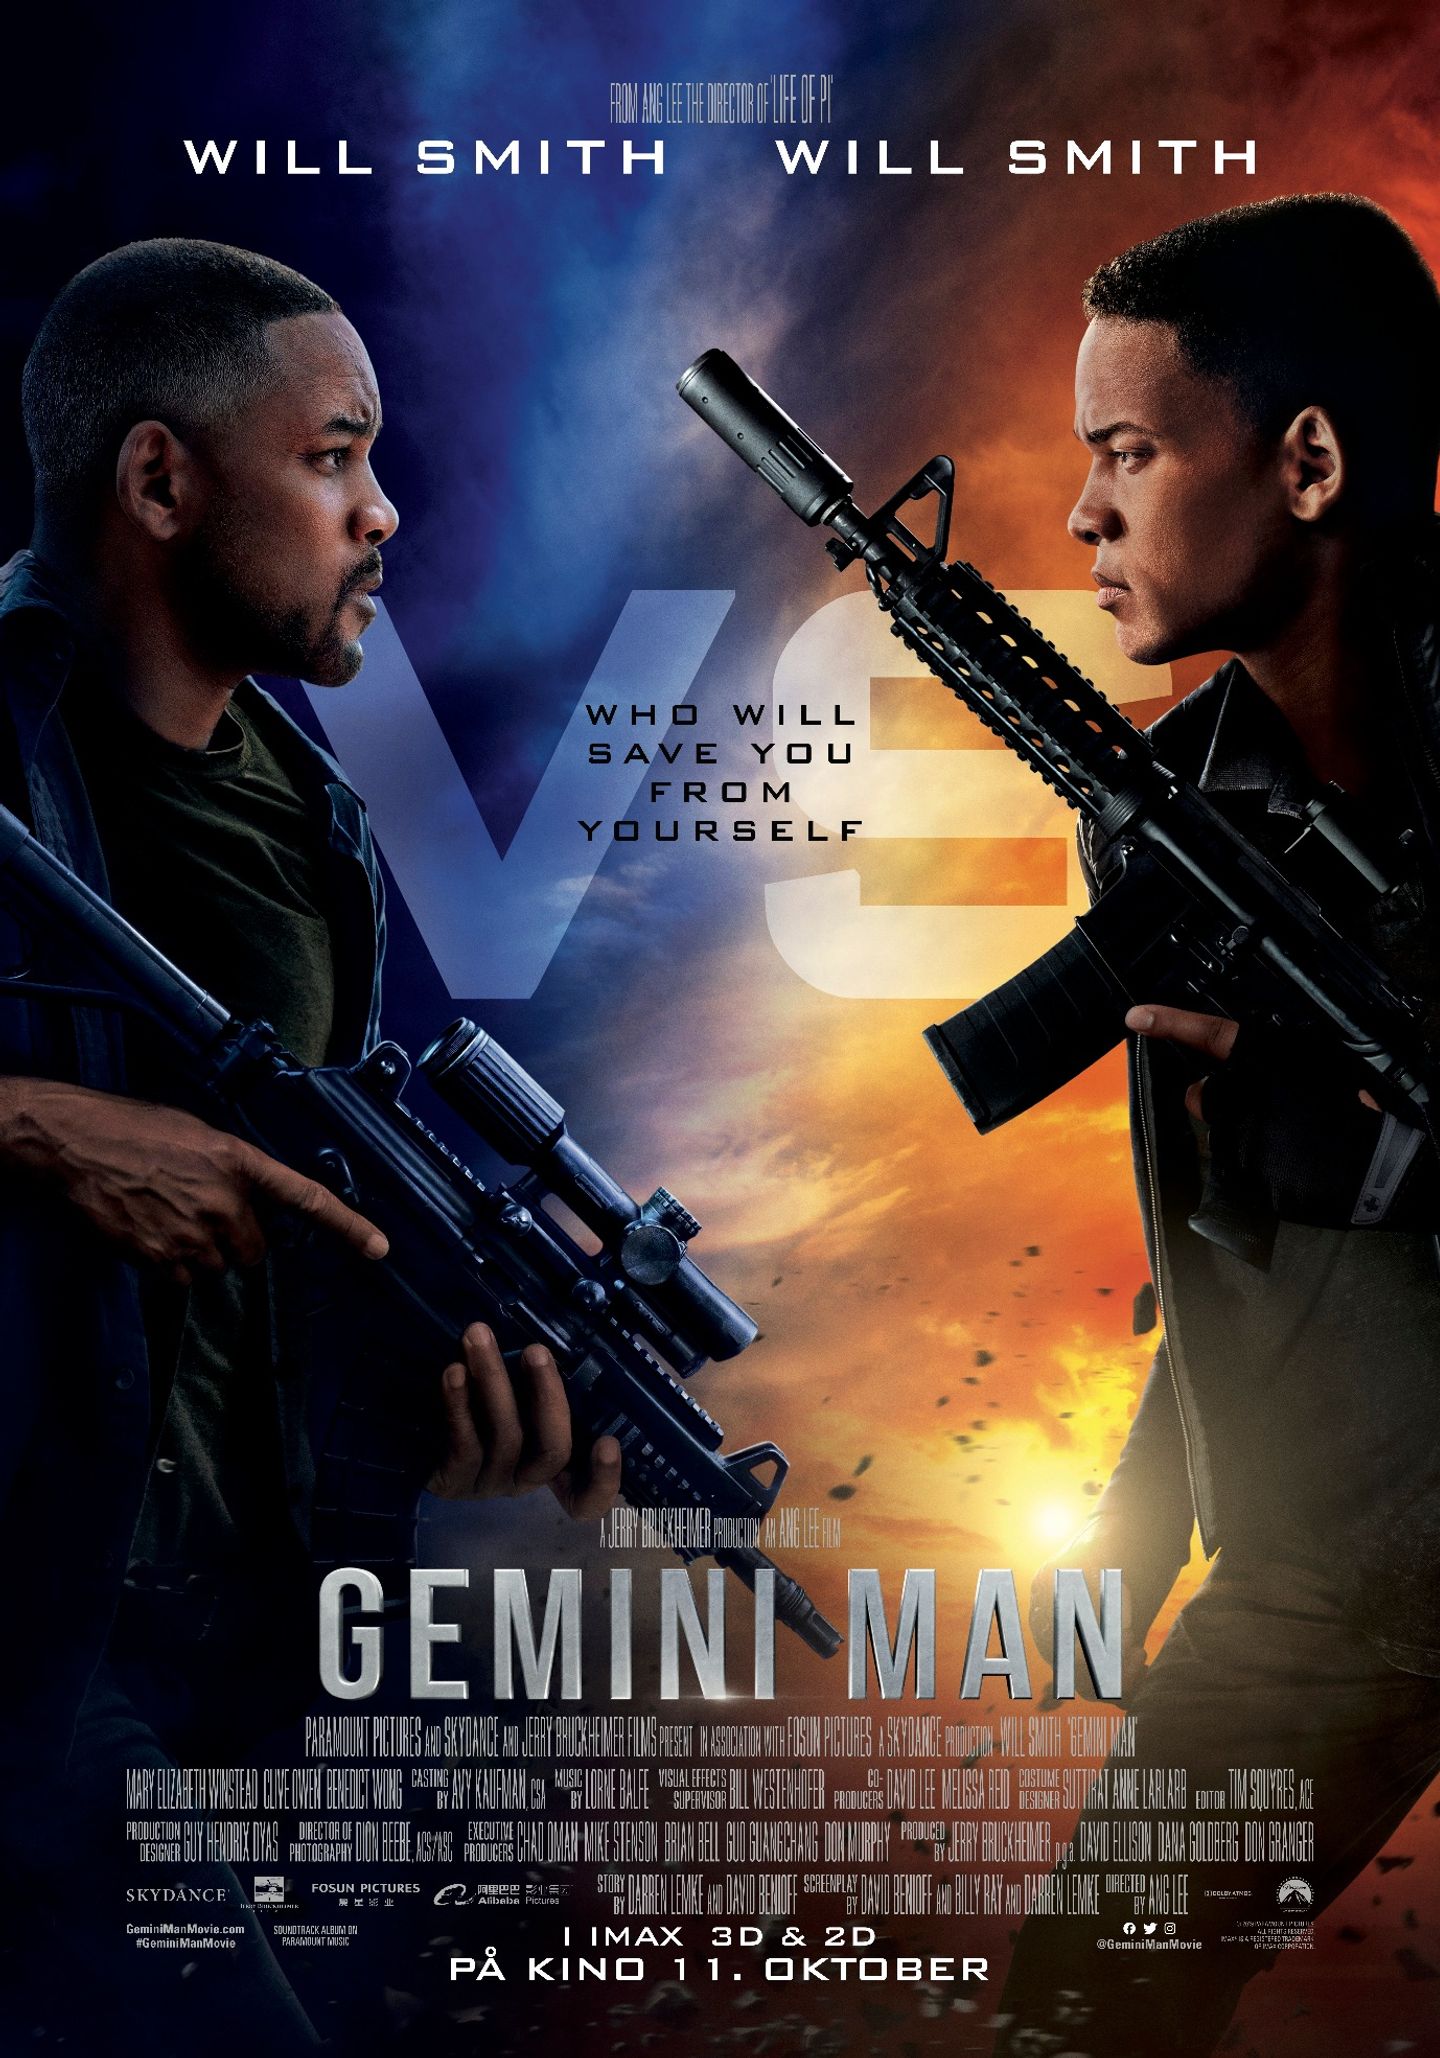 Plakat for 'Gemini Man'